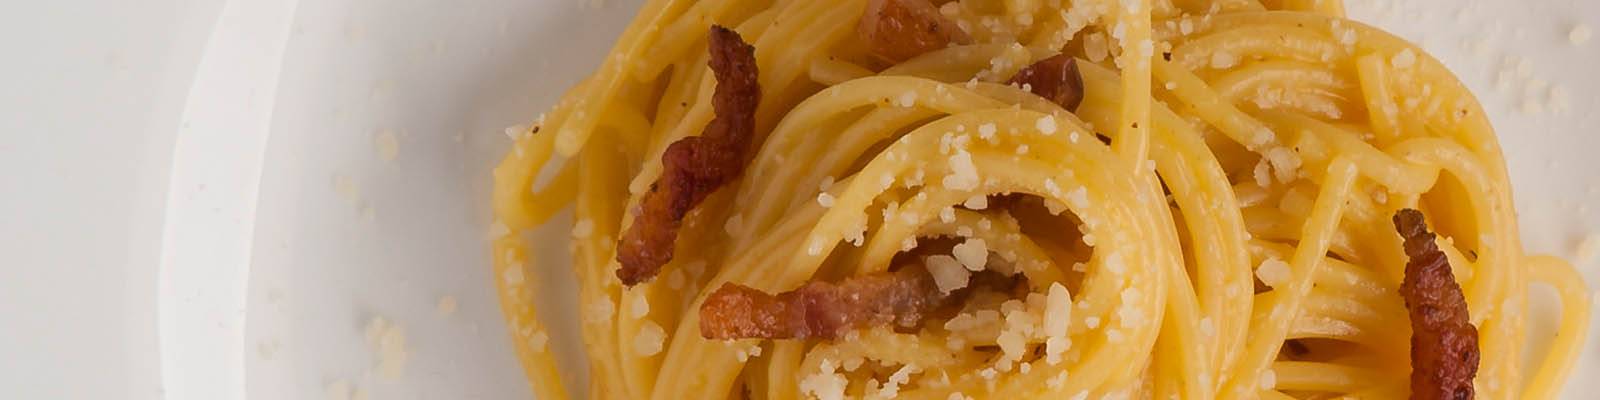 Pasta Garofalo - Spaghetti à la carbonara